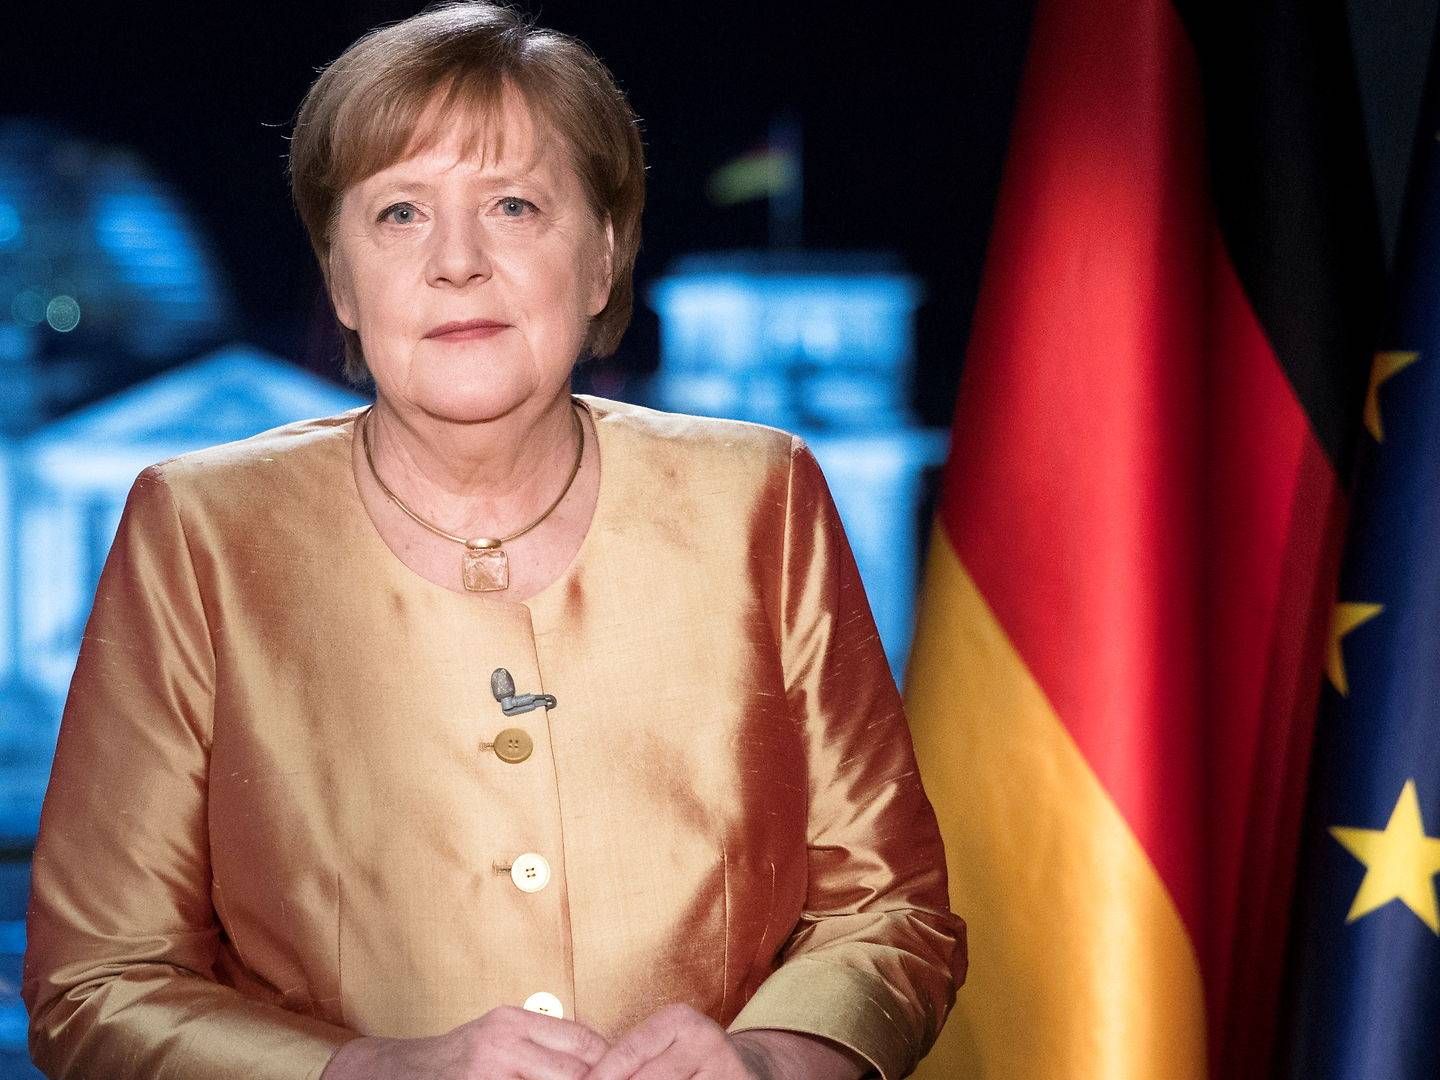 Forbundskansler Angela Merkel mødes med delstaternes regeringsledere i Forbundsrådet tirsdag for at drøfte coronakrisen. | Foto: Pool/Reuters/Ritzau Scanpix